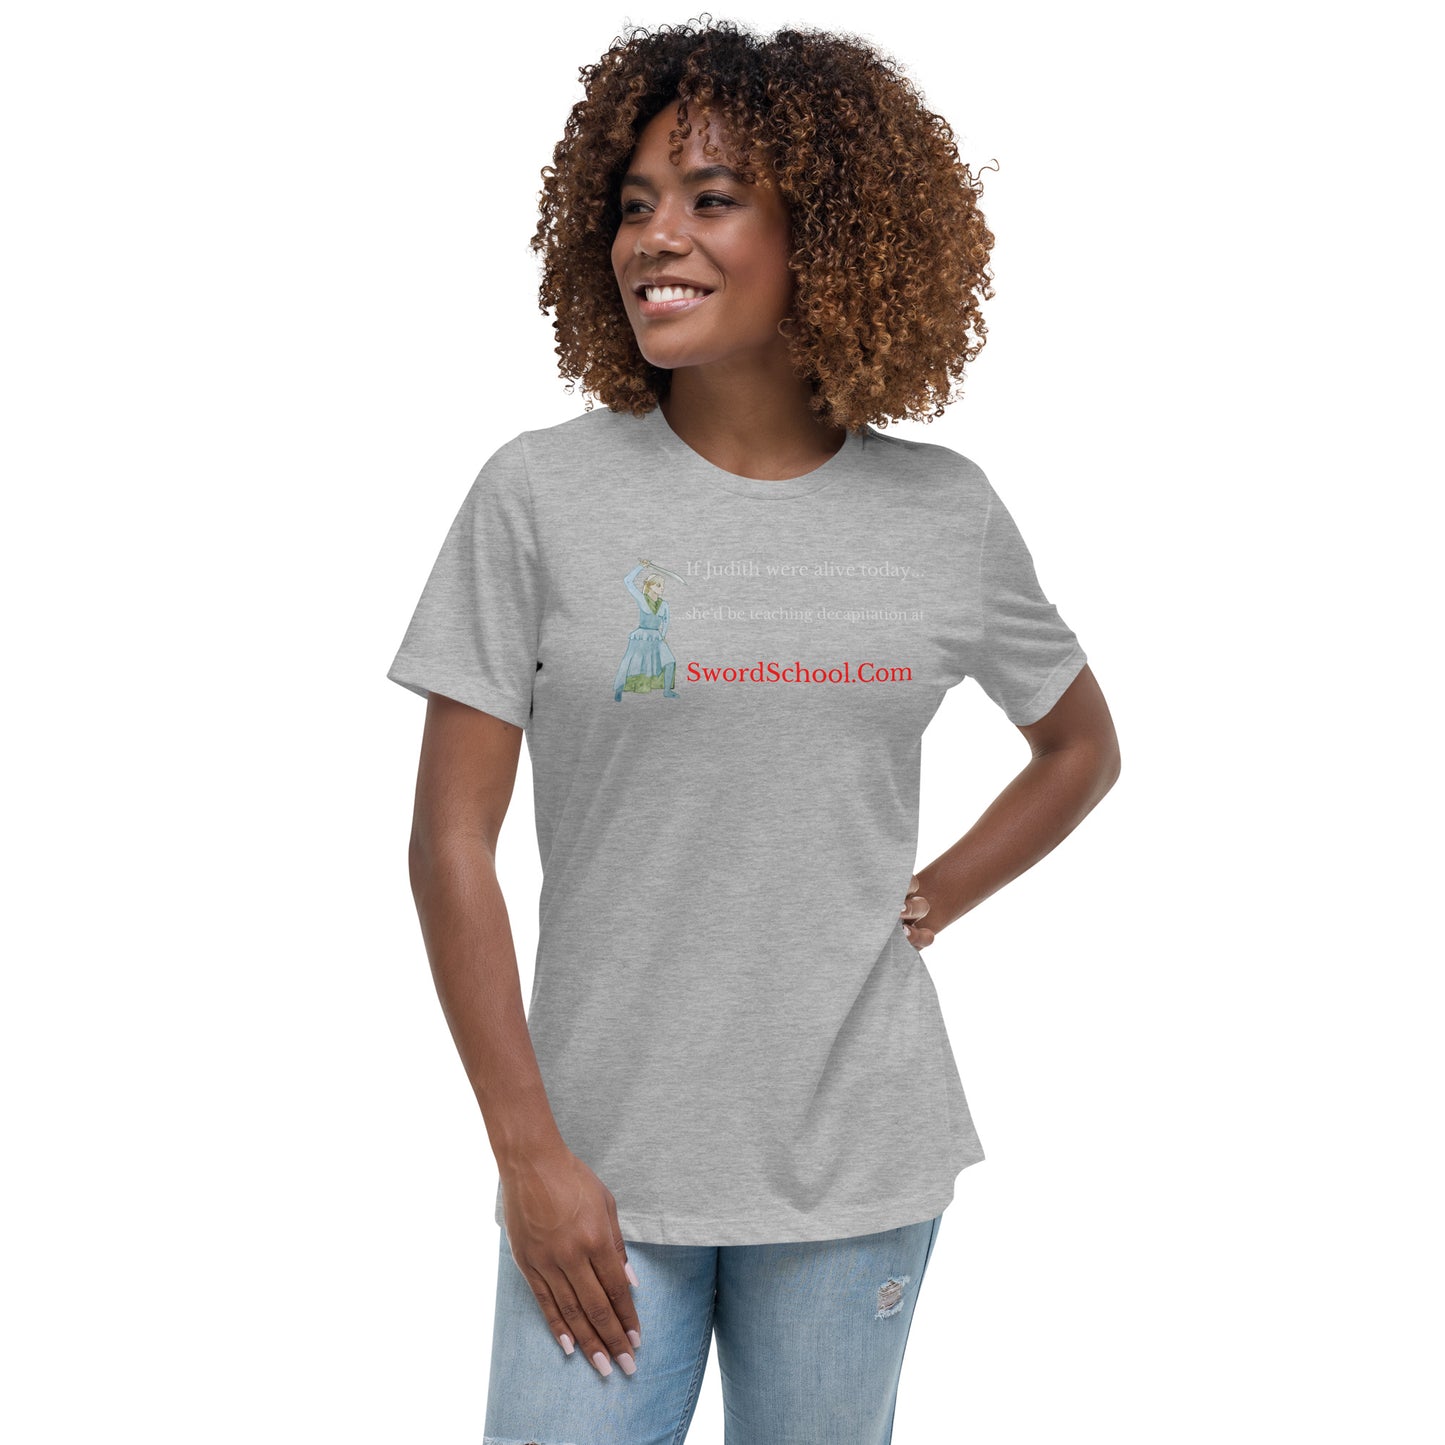 Judith Women's T-shirt